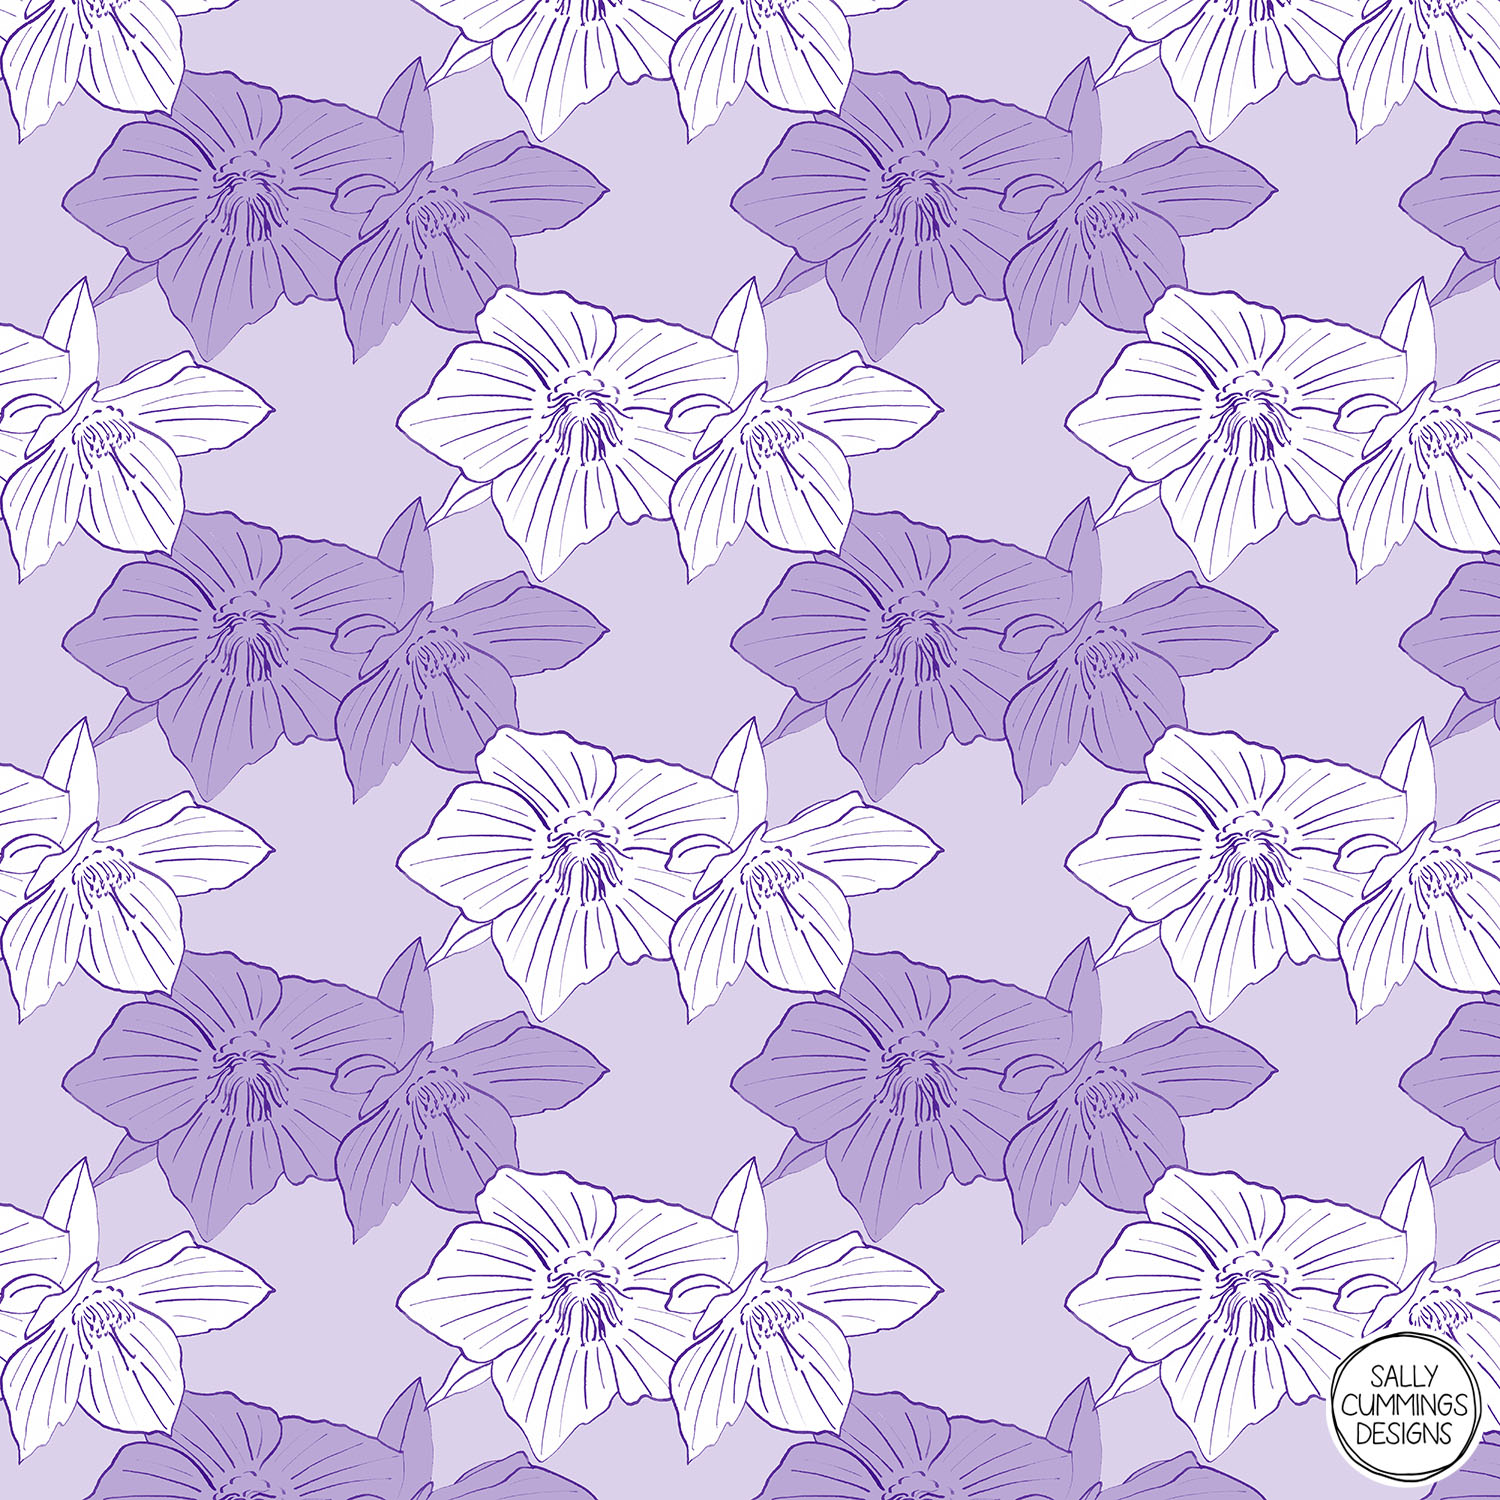 Sally Cummings Designs - Purple Hellebores Pattern